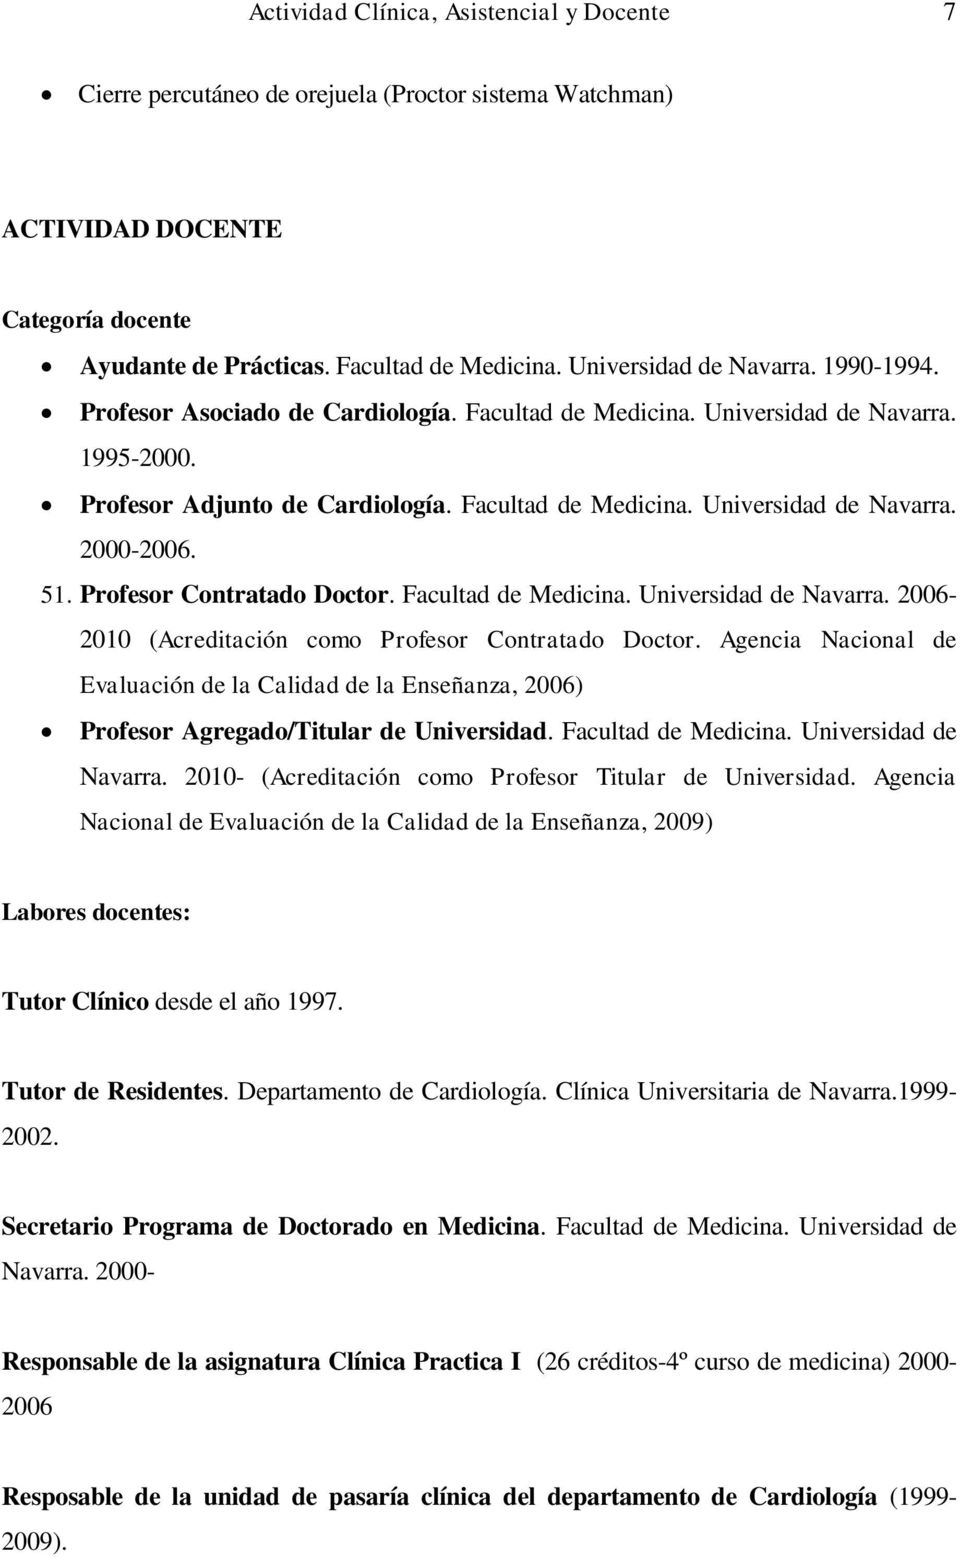 51. Profesor Contratado Doctor. Facultad de Medicina. Universidad de Navarra. 2006-2010 (Acreditación como Profesor Contratado Doctor.